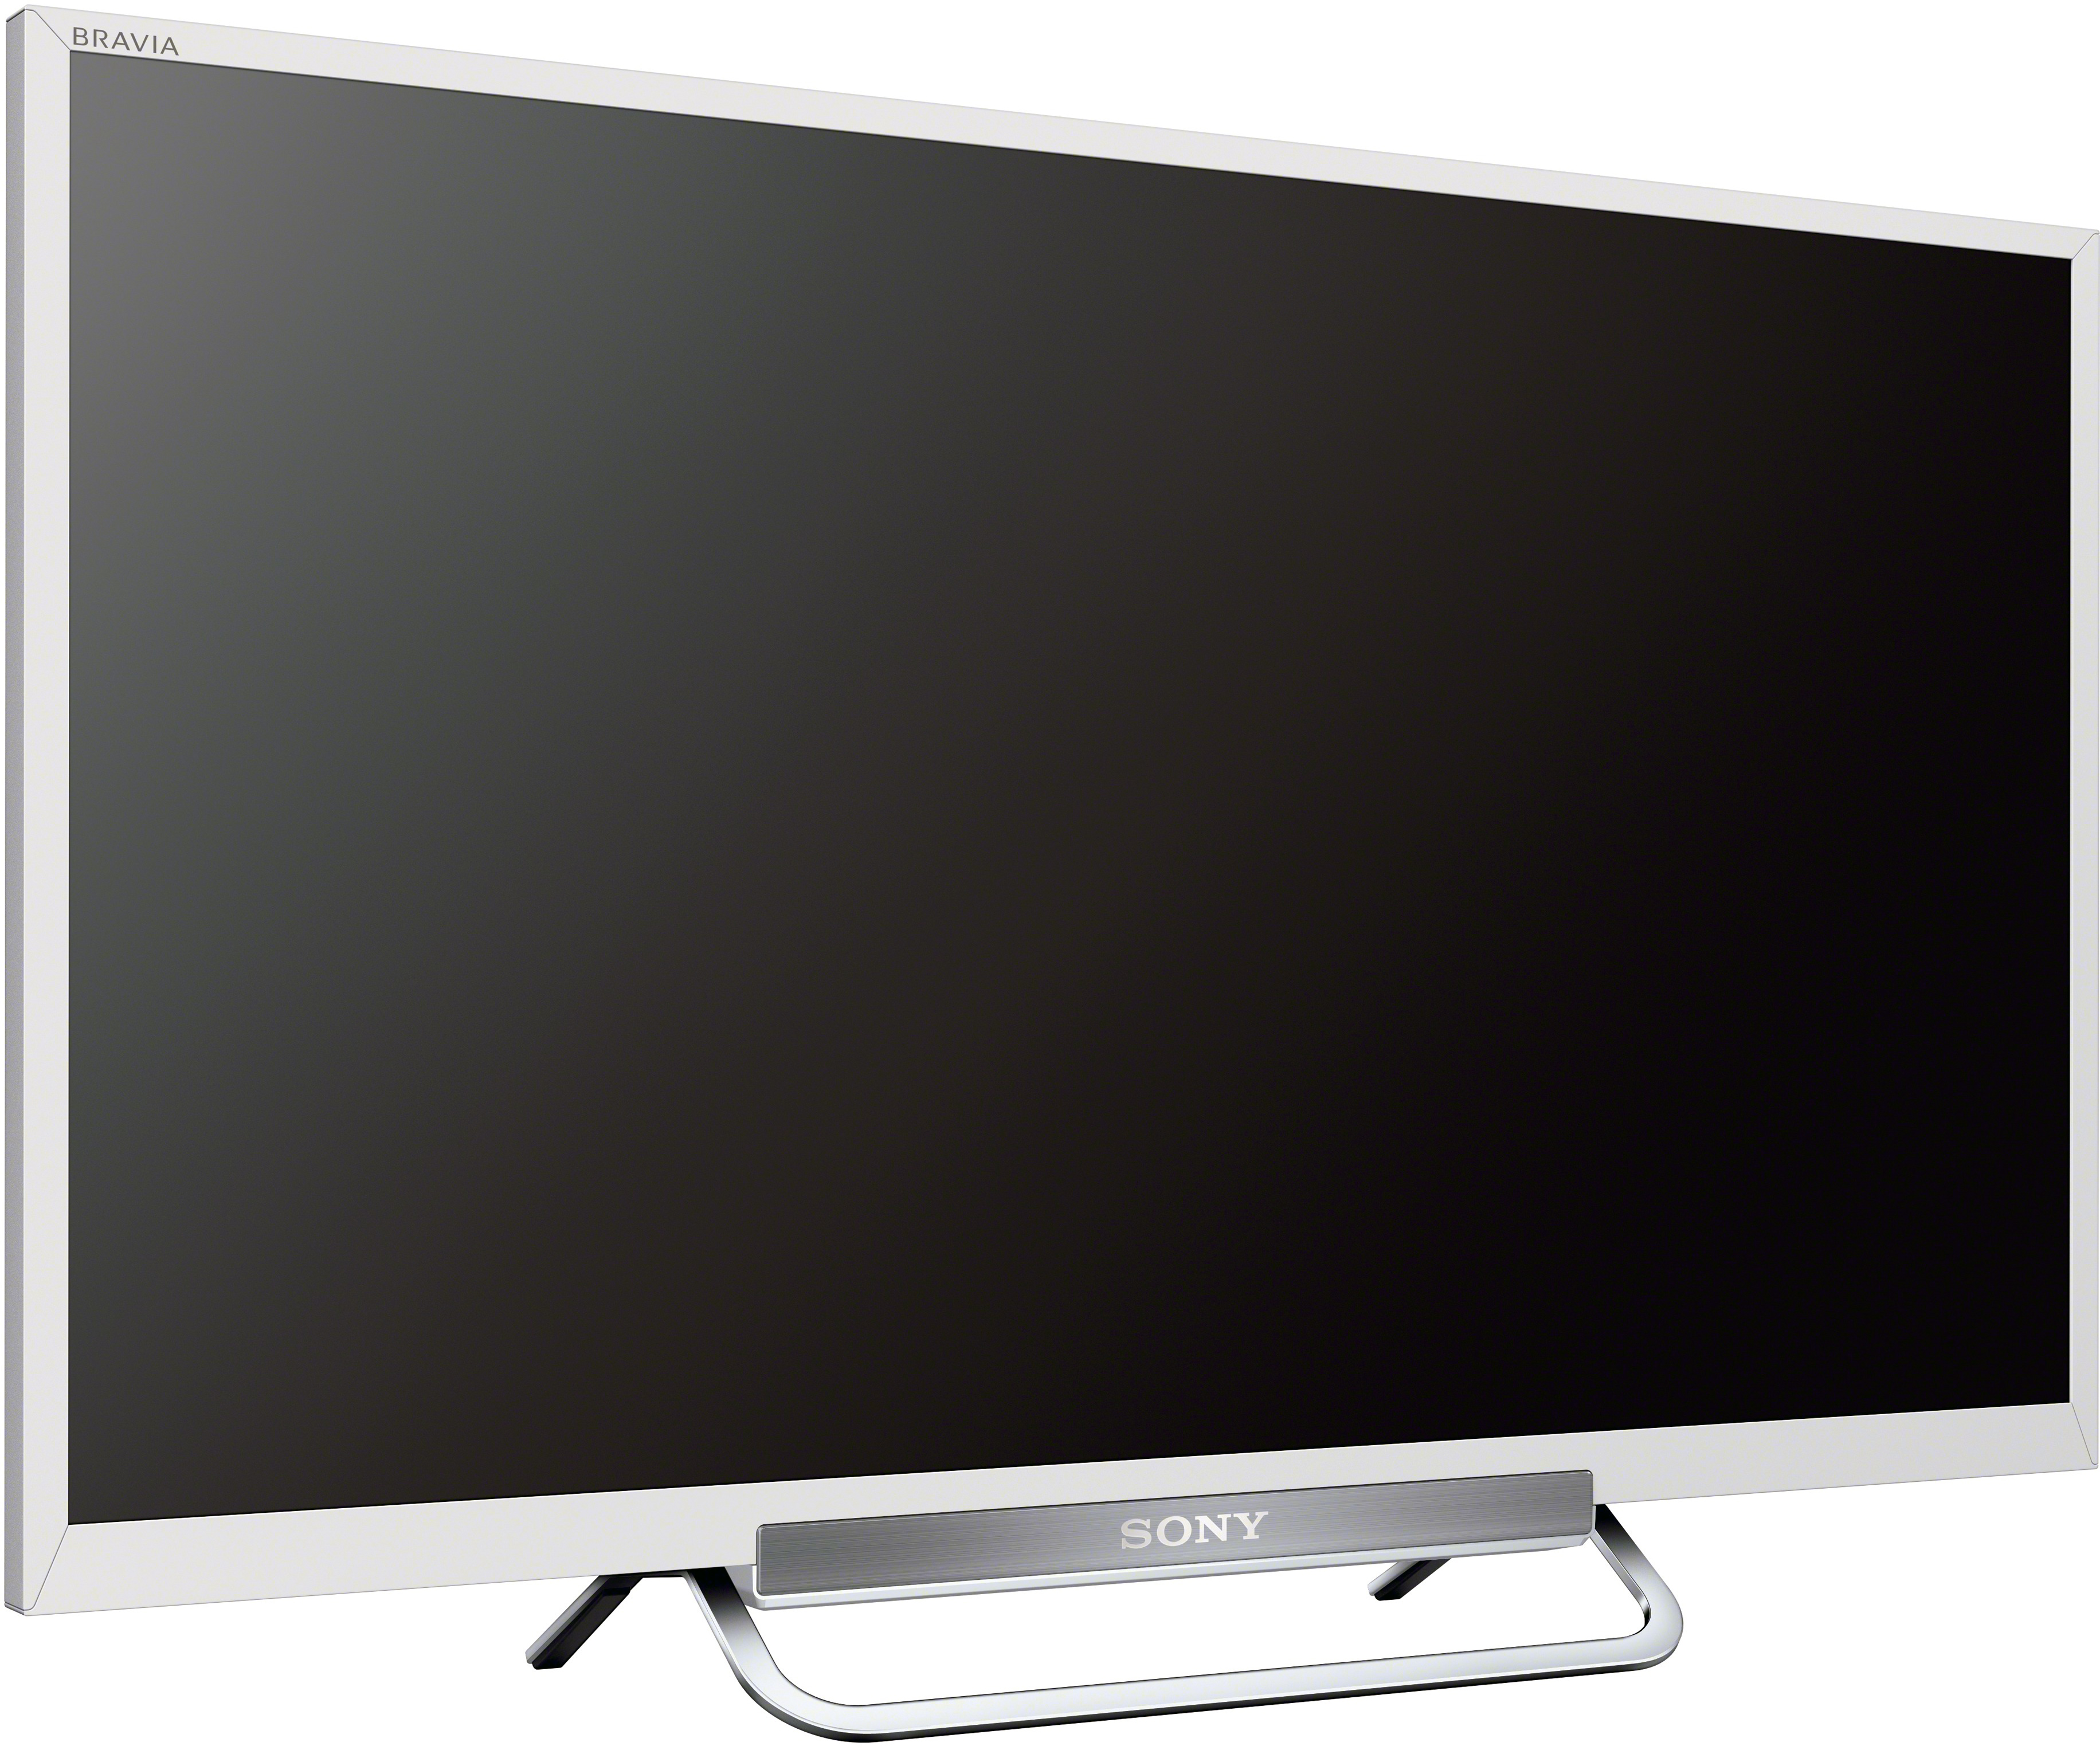 Телевизор sony спб. Sony KDL 24w605a. Sony KDL-24w605a led. LCD телевизор Sony KDL-24w605a. Телевизор Sony KDL-24w605a 24 белый.